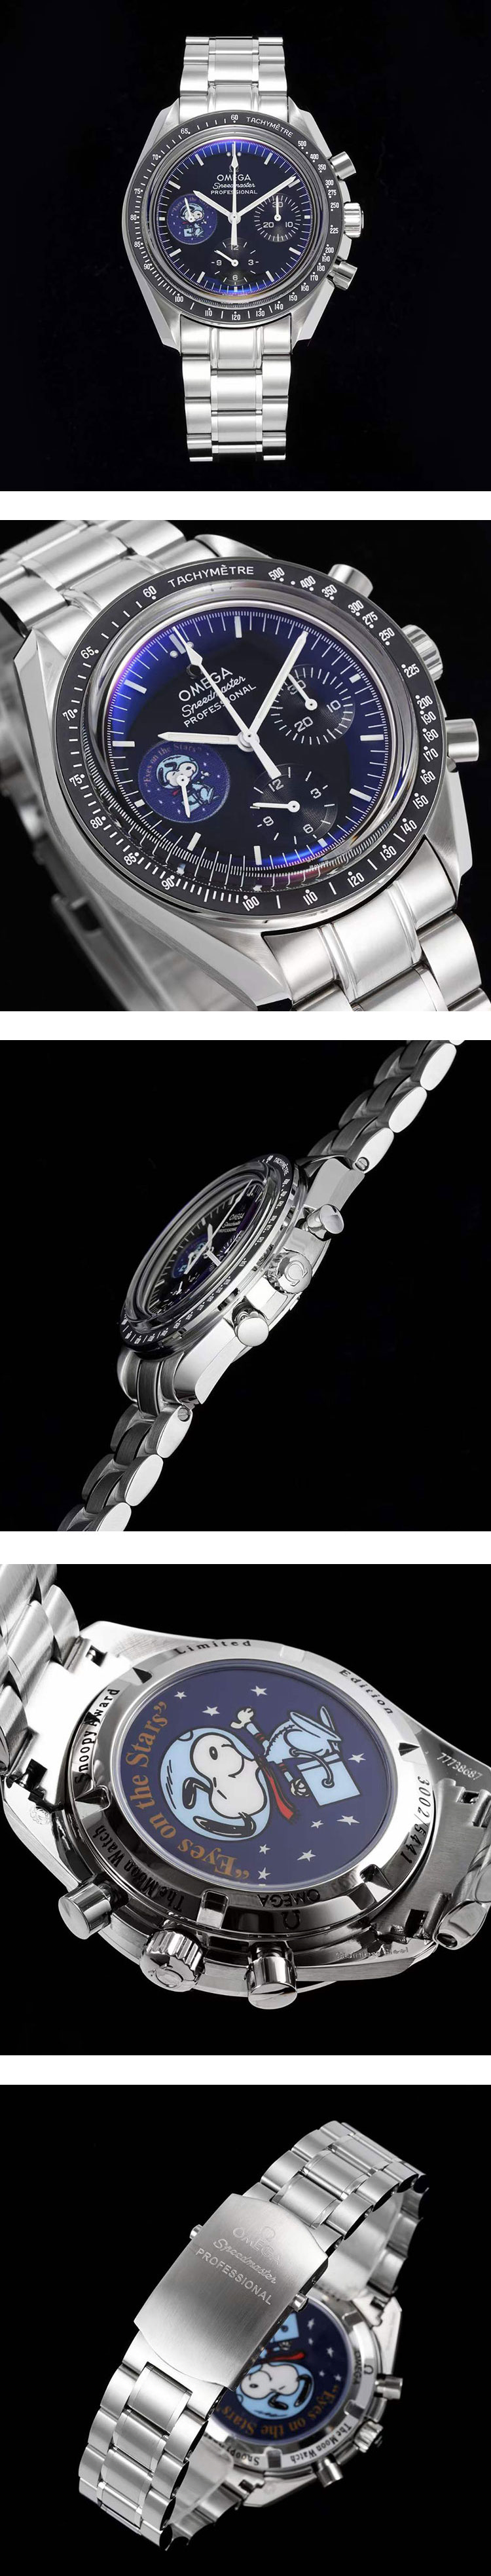 オメガ スピードマスターコピー腕時計 3578.51  高品質プロフェッショナル スヌーピーアワード